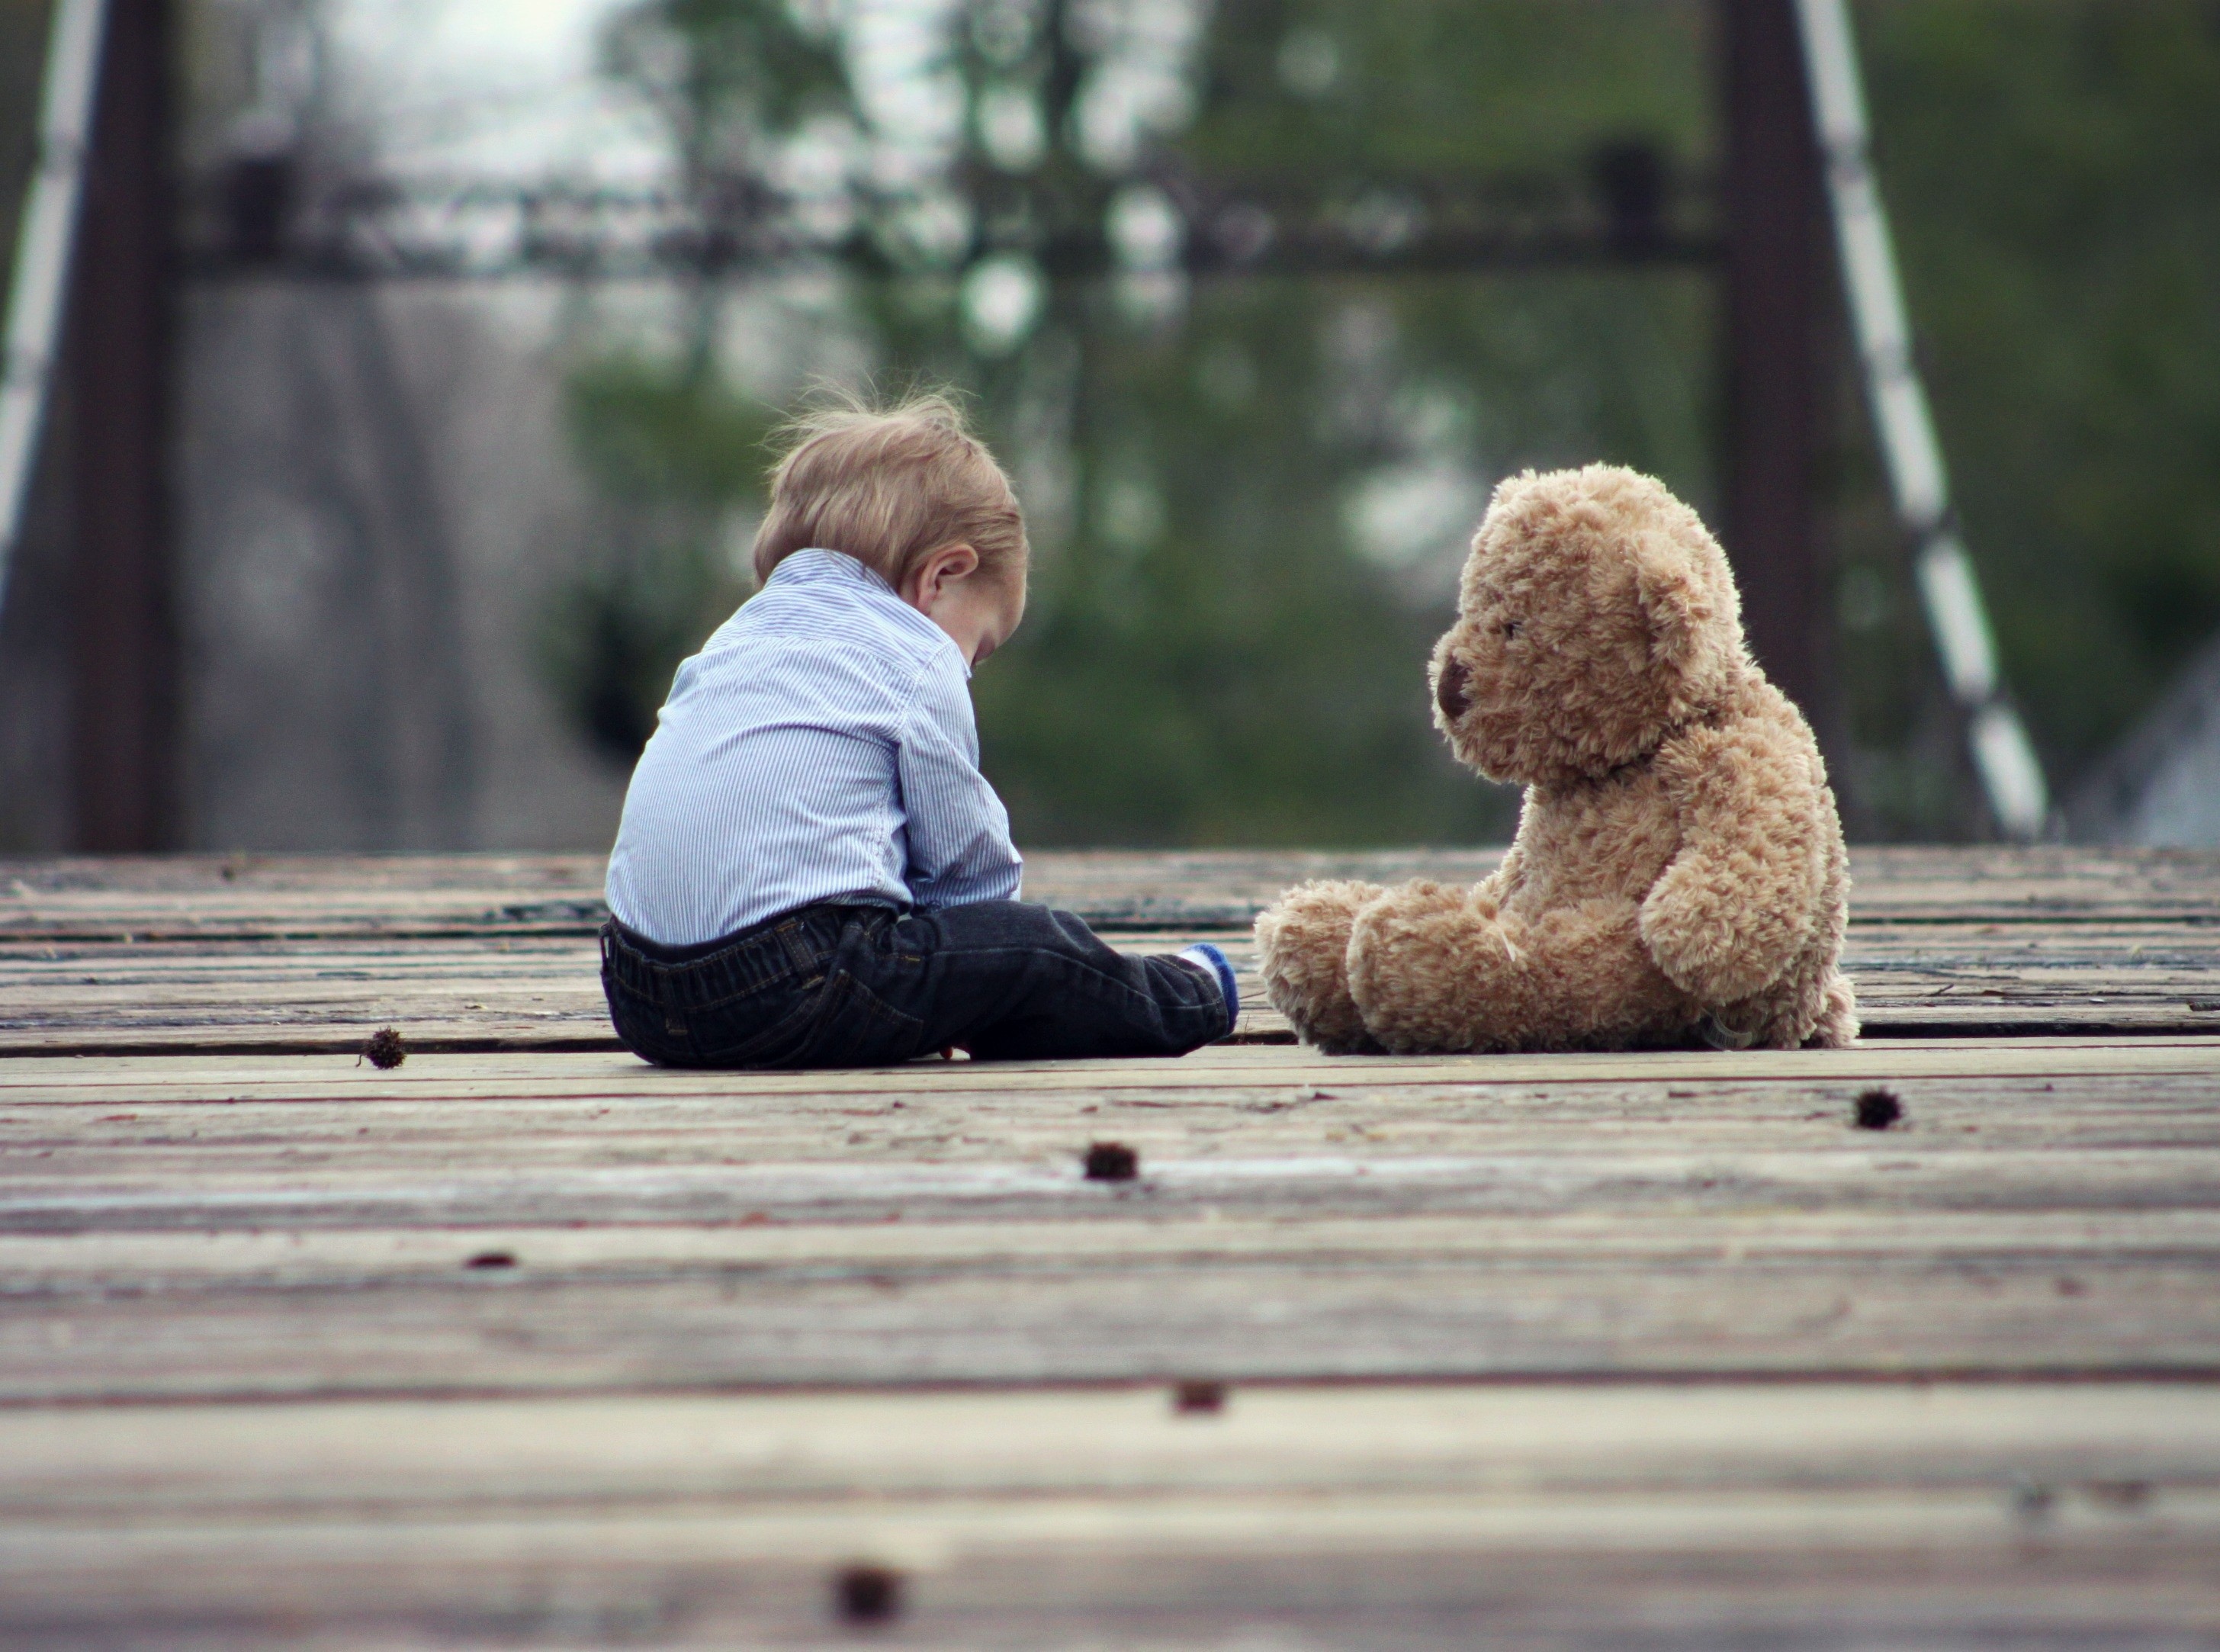 boy-playing-with-teddy-bear-on-wooden-bridge.jpg